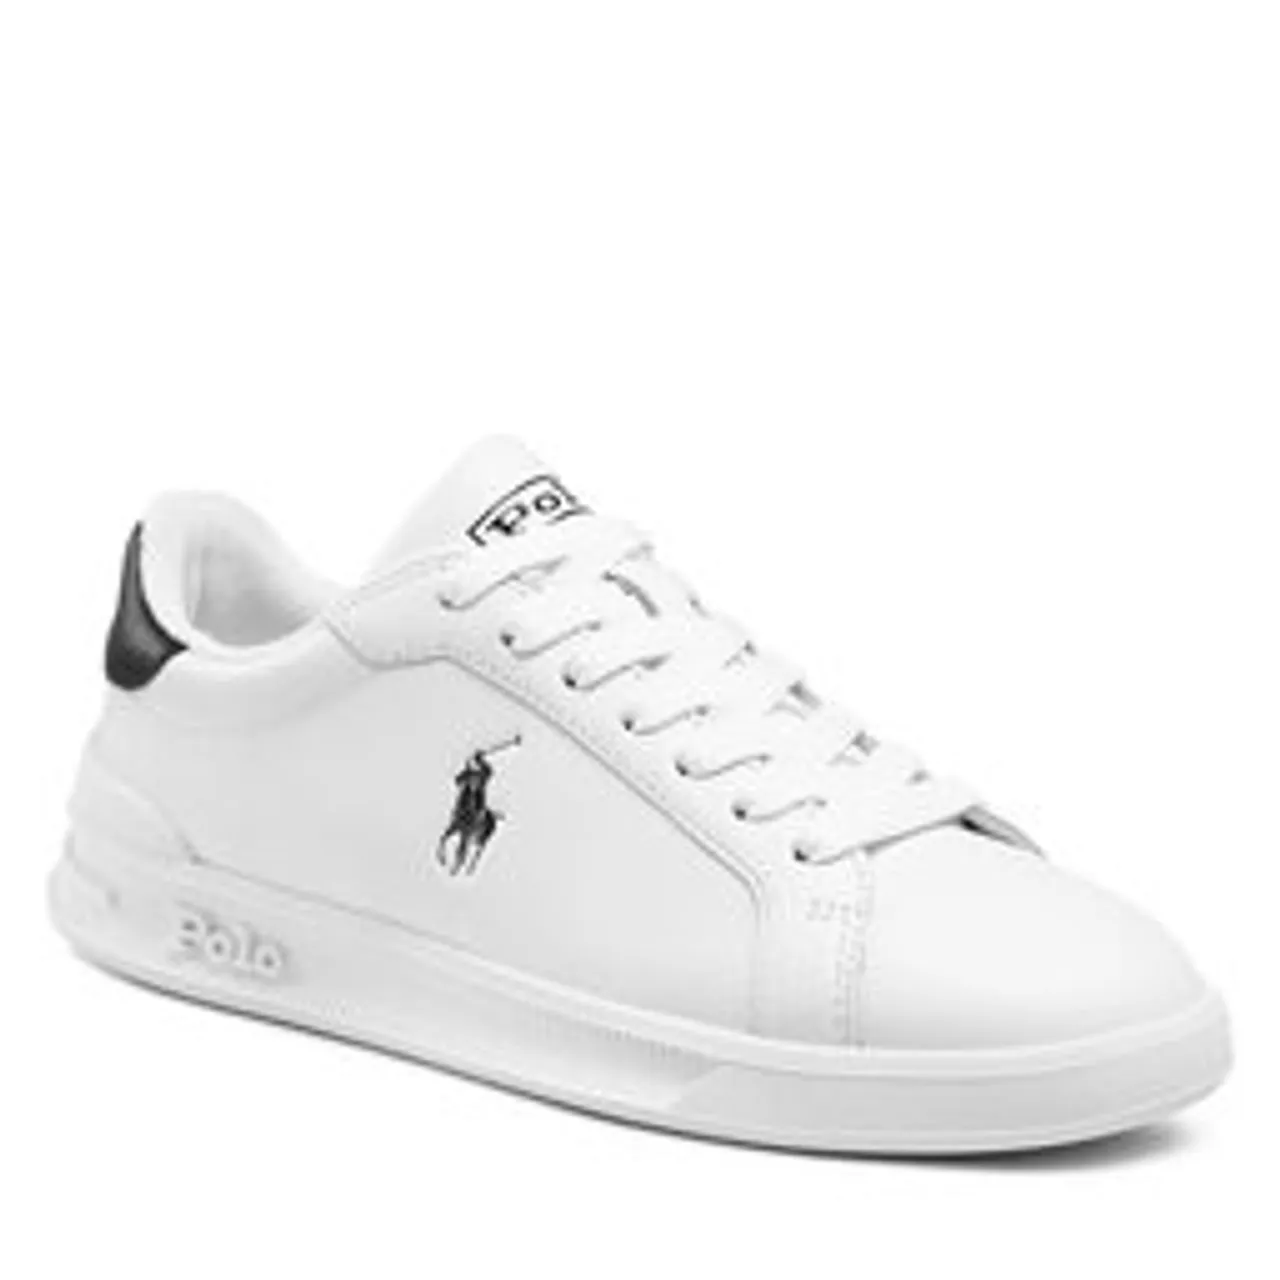 Sneakers Polo Ralph Lauren Hrt Ct II 809829824005 Wht/Blk